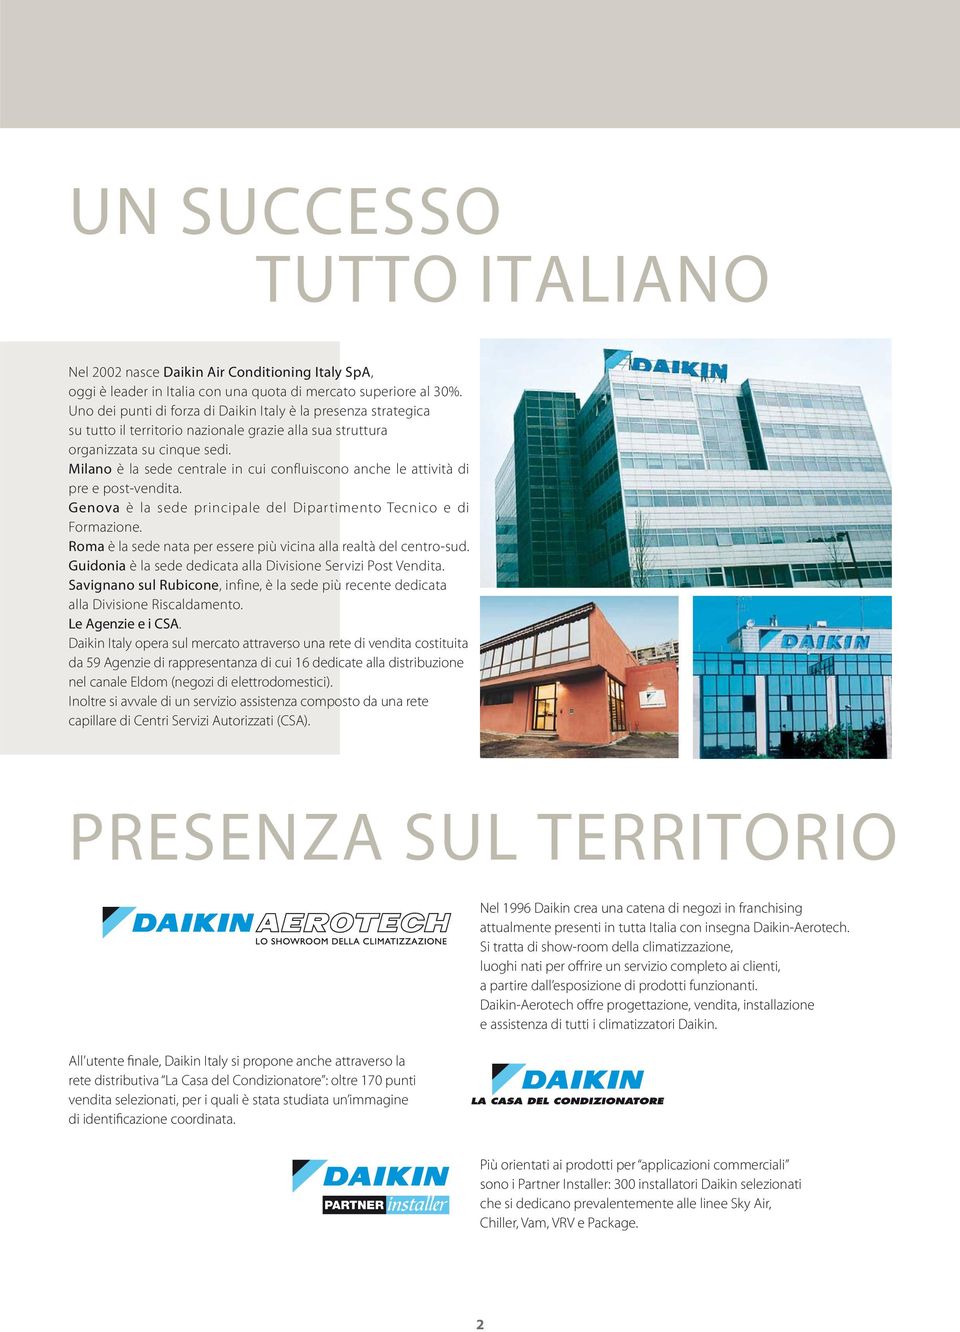 Milano è la sede centrale in cui confluiscono anche le attività di pre e post-vendita. Genova è la sede principale del Dipartimento Tecnico e di Formazione.